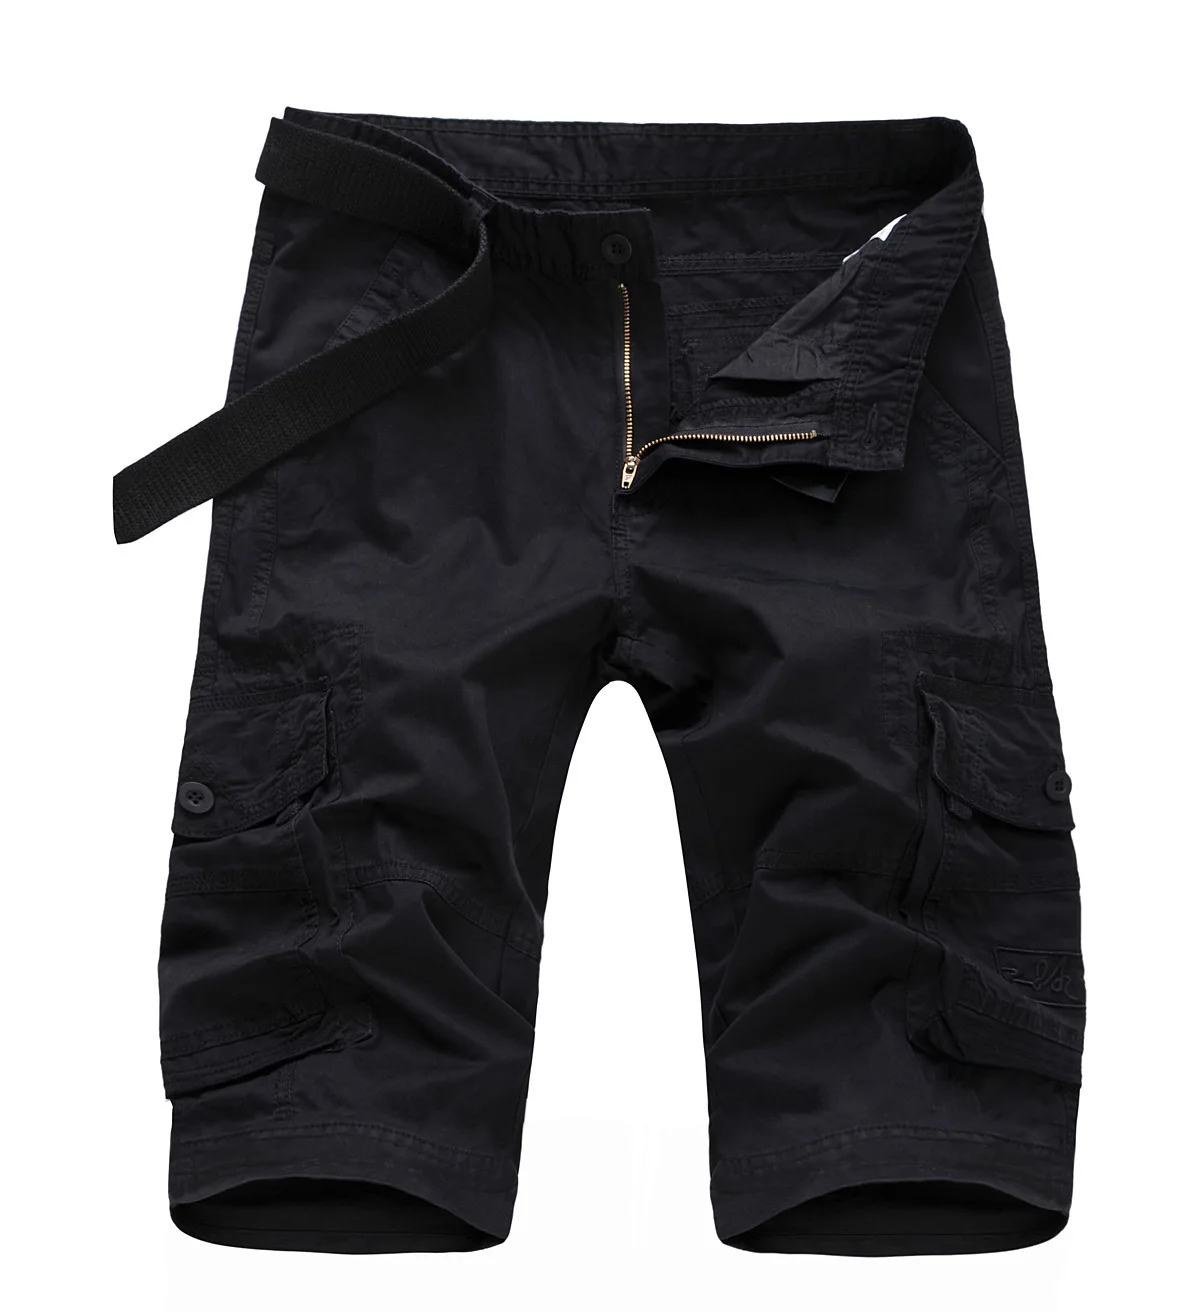 Шорты-карго мужские камуфляжные, повседневные армейские штаны 5 точек в стиле милитари, однотонные брюки для бега с несколькими карманами, у... от AliExpress RU&CIS NEW